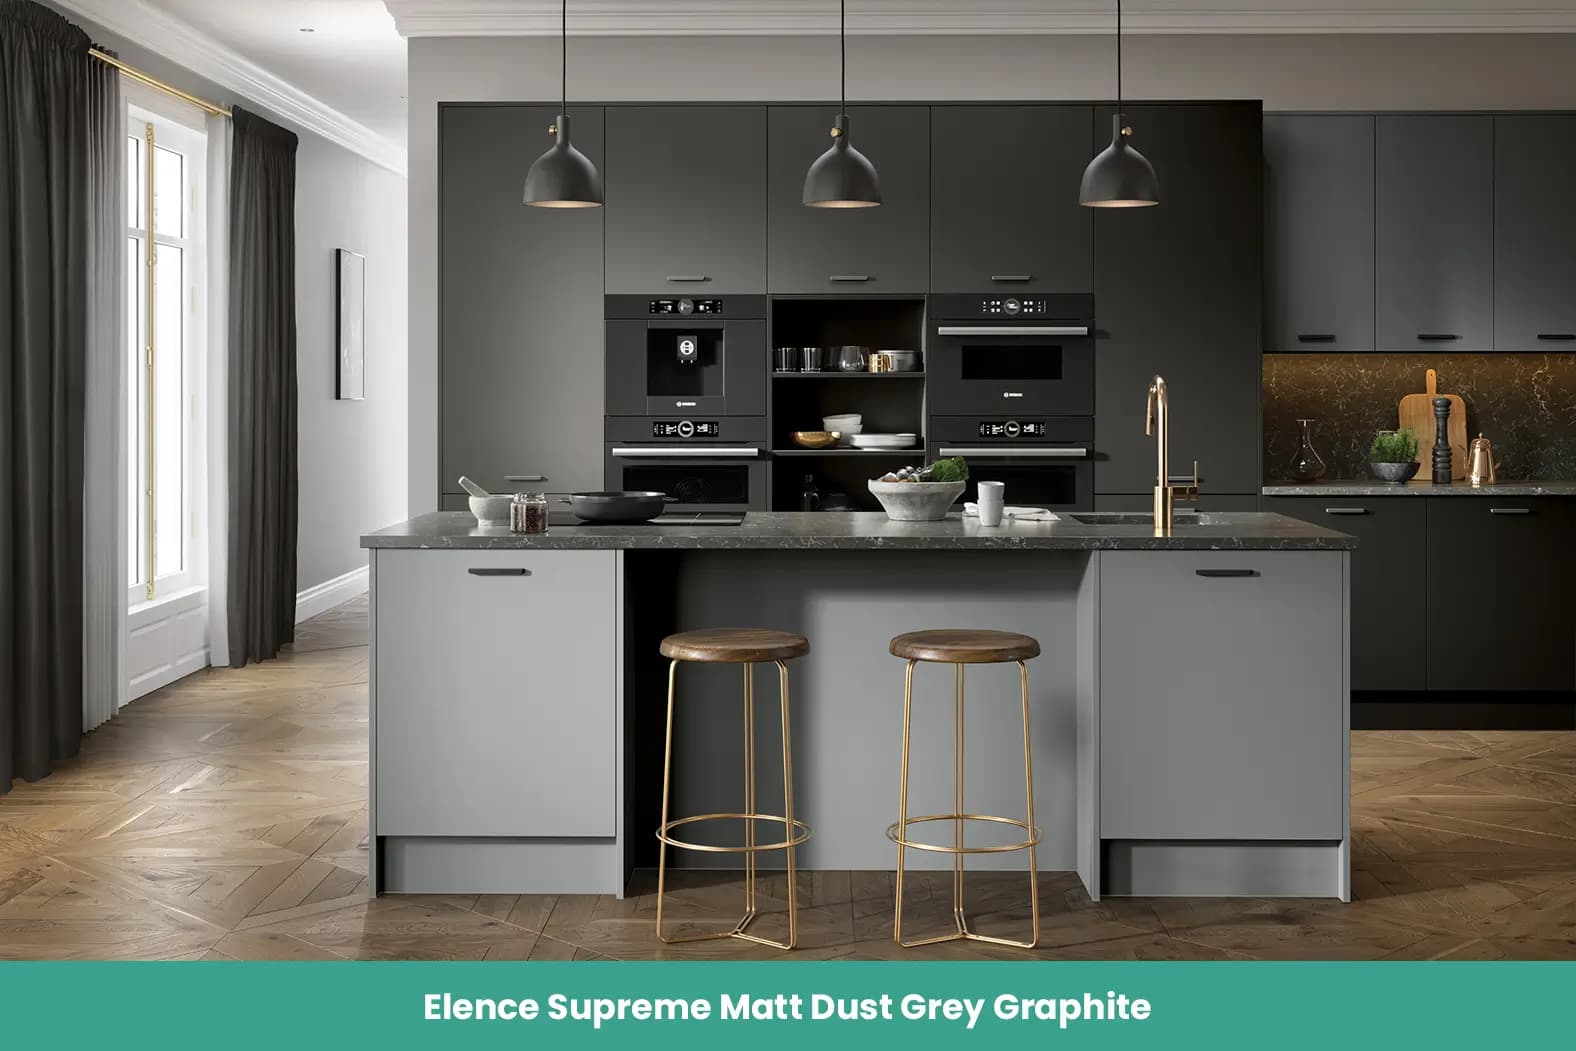 Elence Supreme Matt Dust Grey Graphite Kitchen